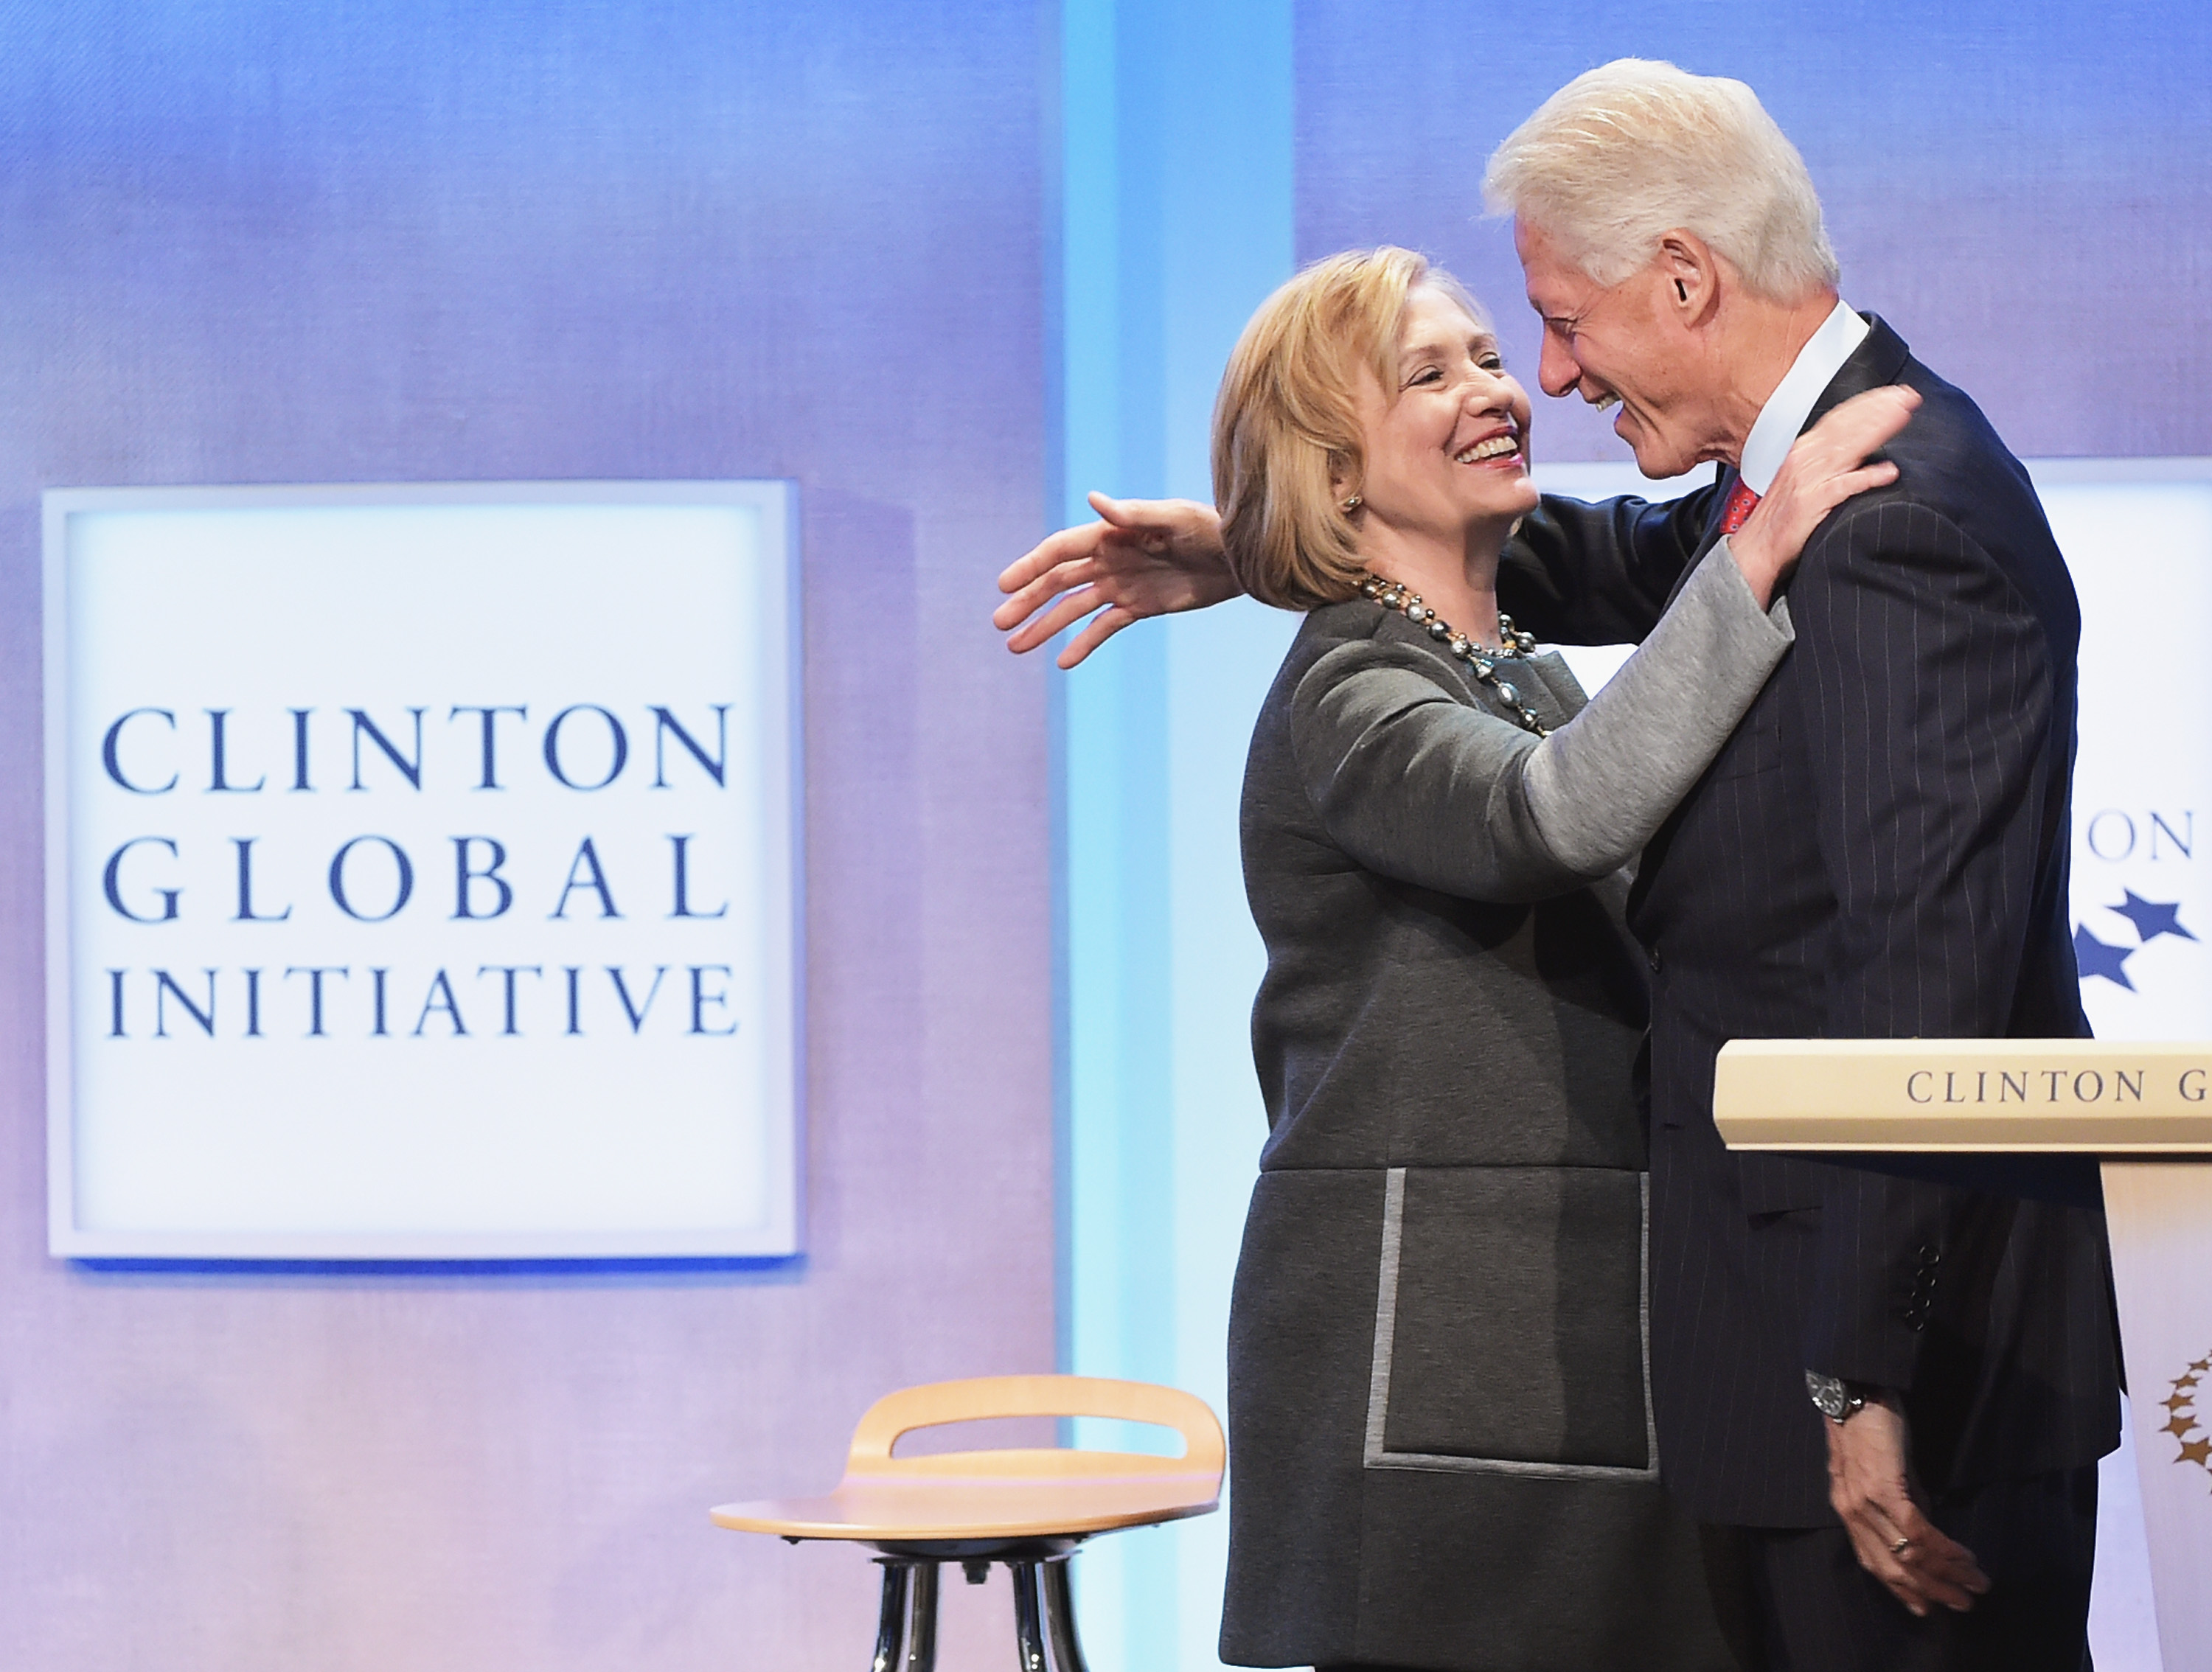 Did the Clinton foundation go too far?